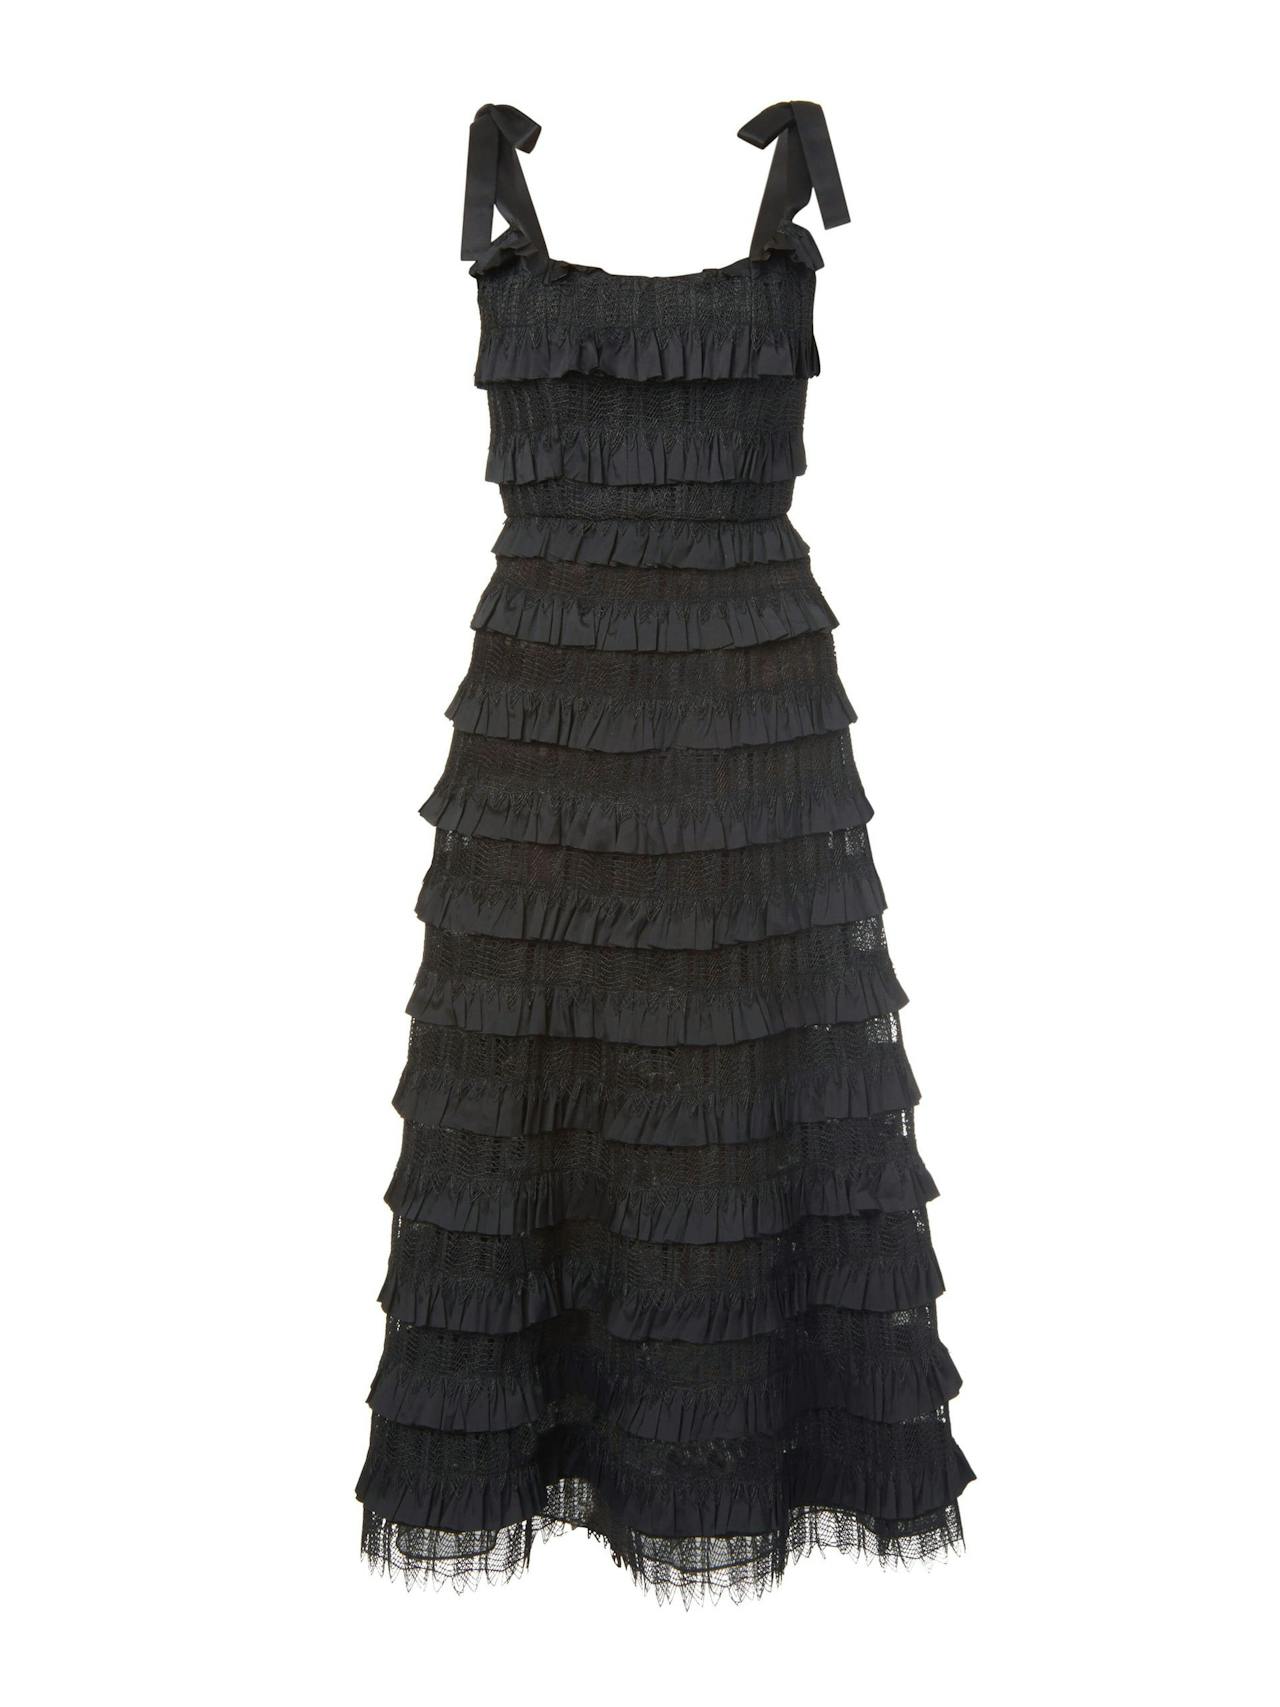 Giselle black layered ruffle corset dress